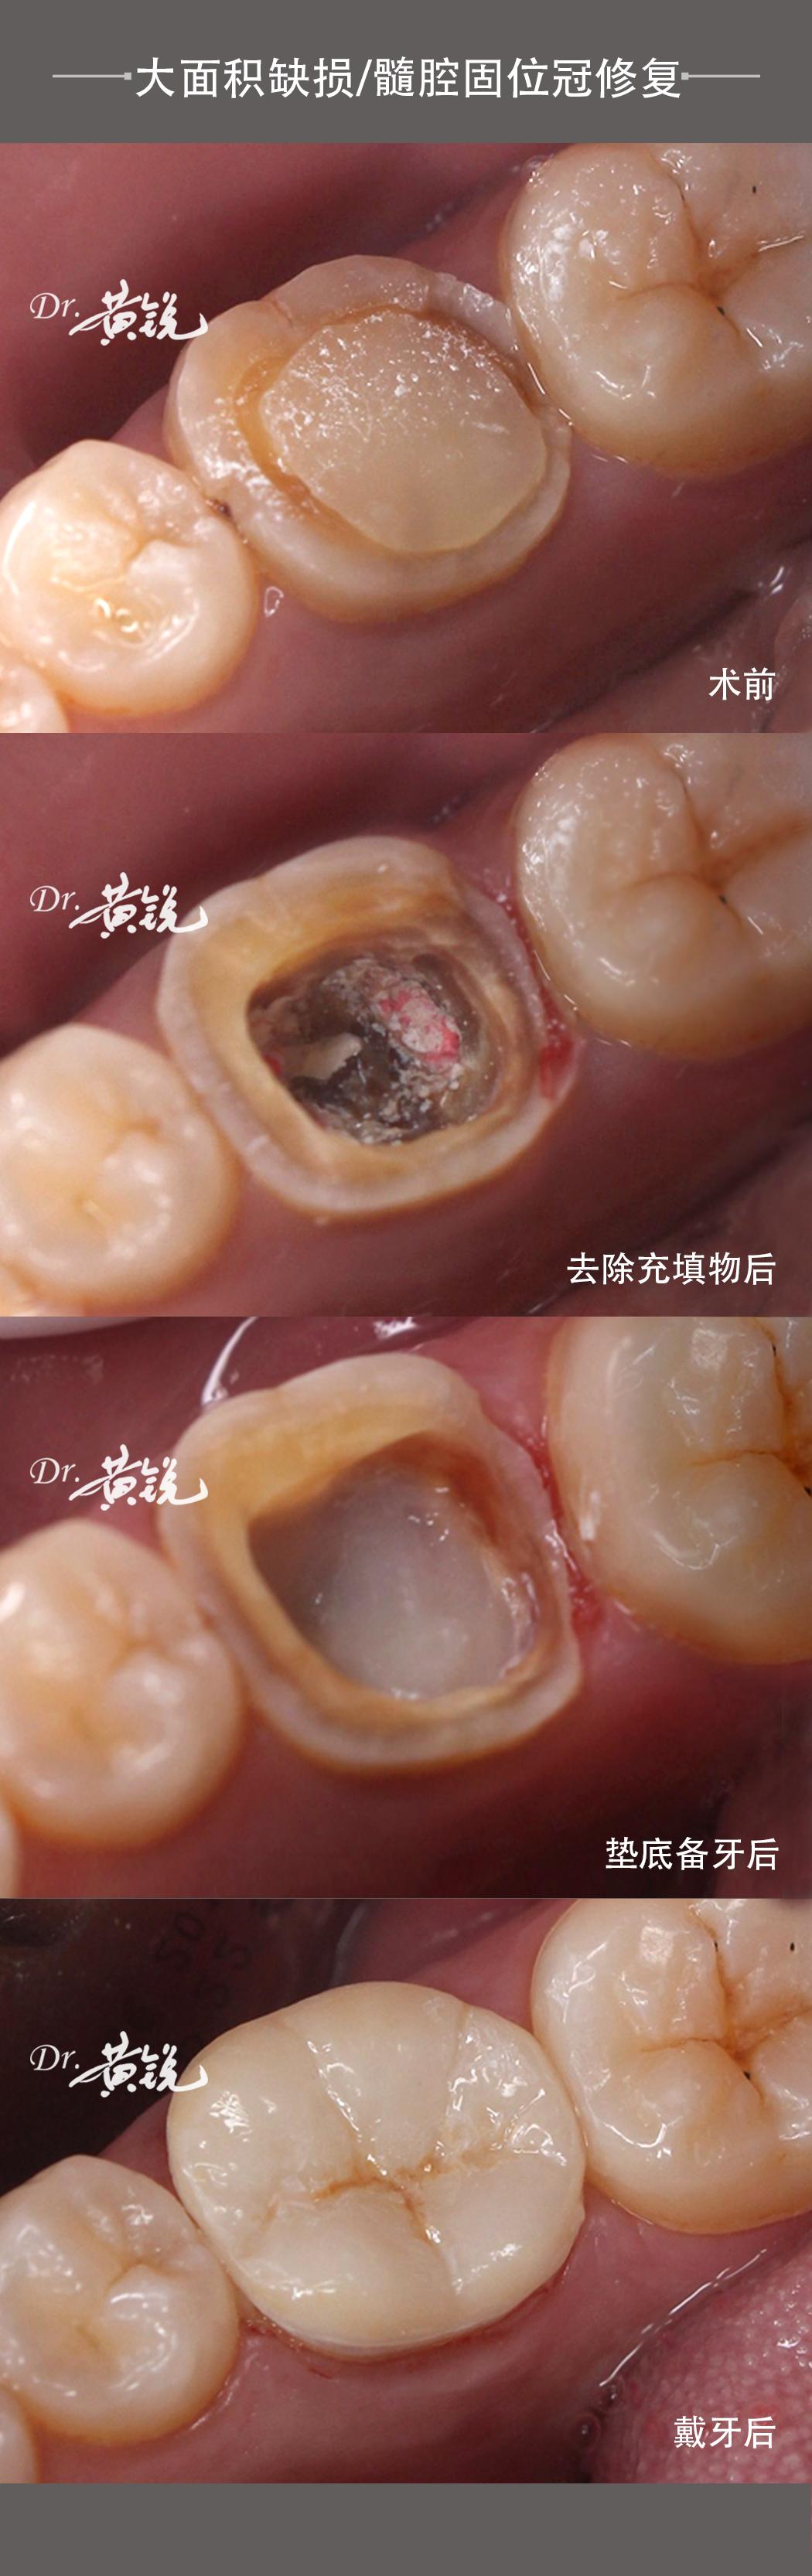 该患牙是在多年前做了根管治疗后直接补起来的,牙齿没有良好的